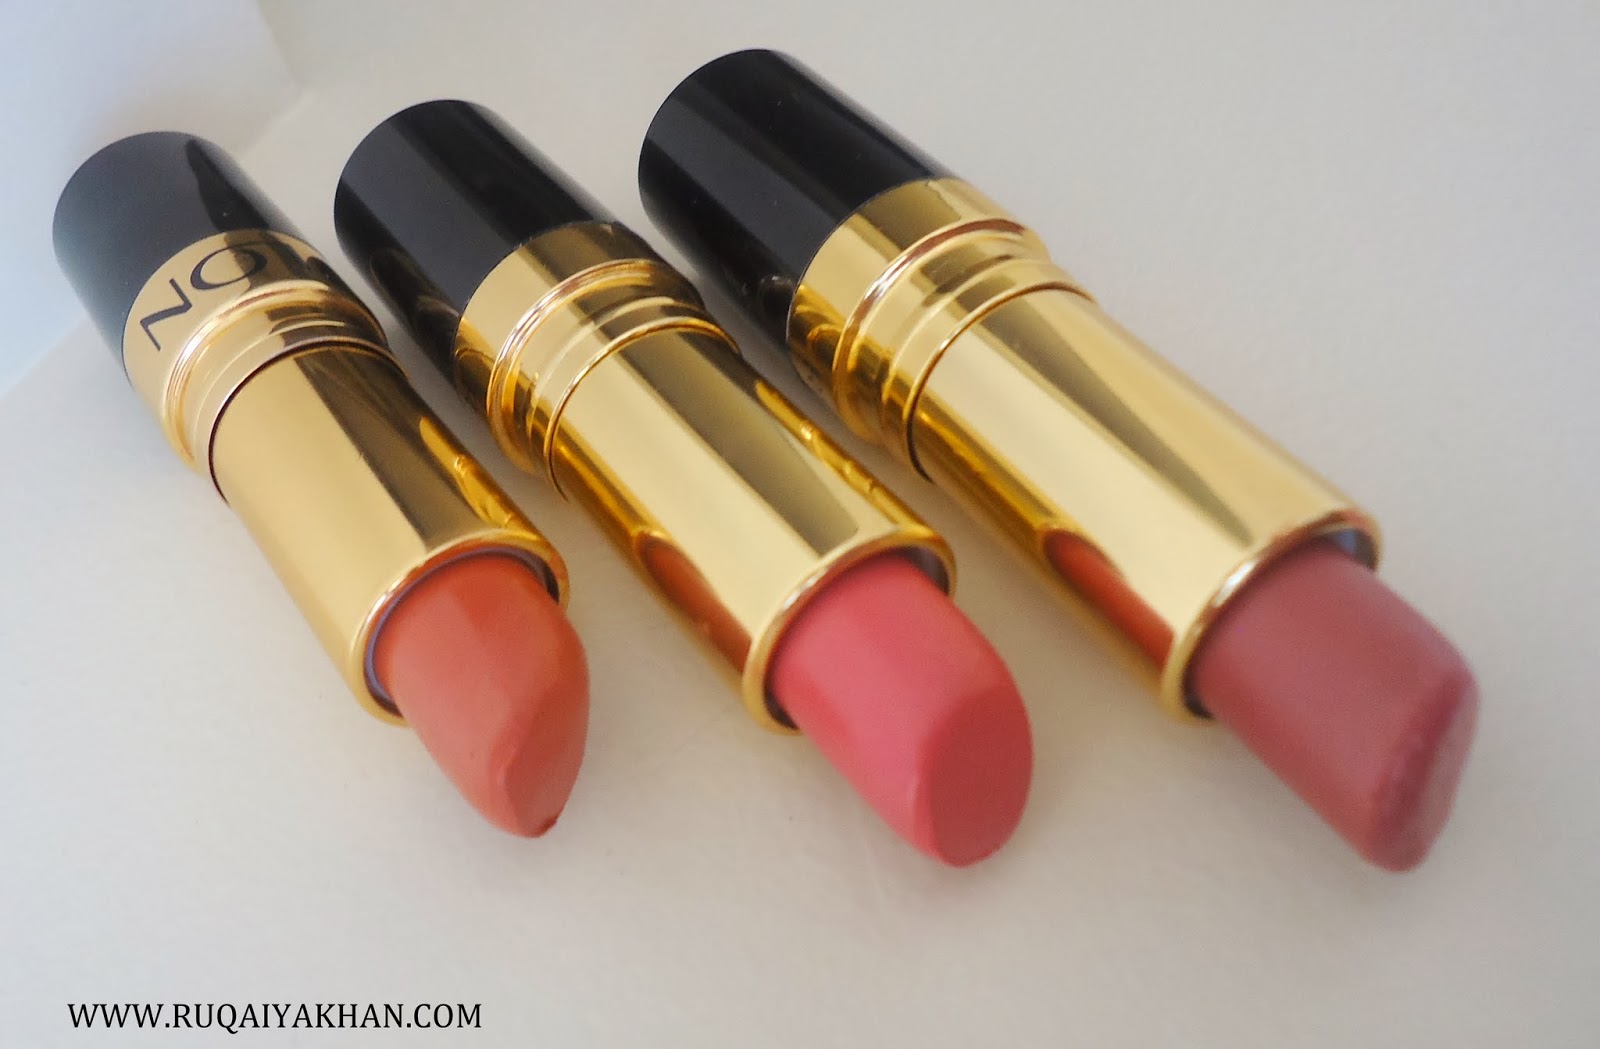 Ruqaiya Khan Revlon Super Lustrous Lipsticks in Pink in